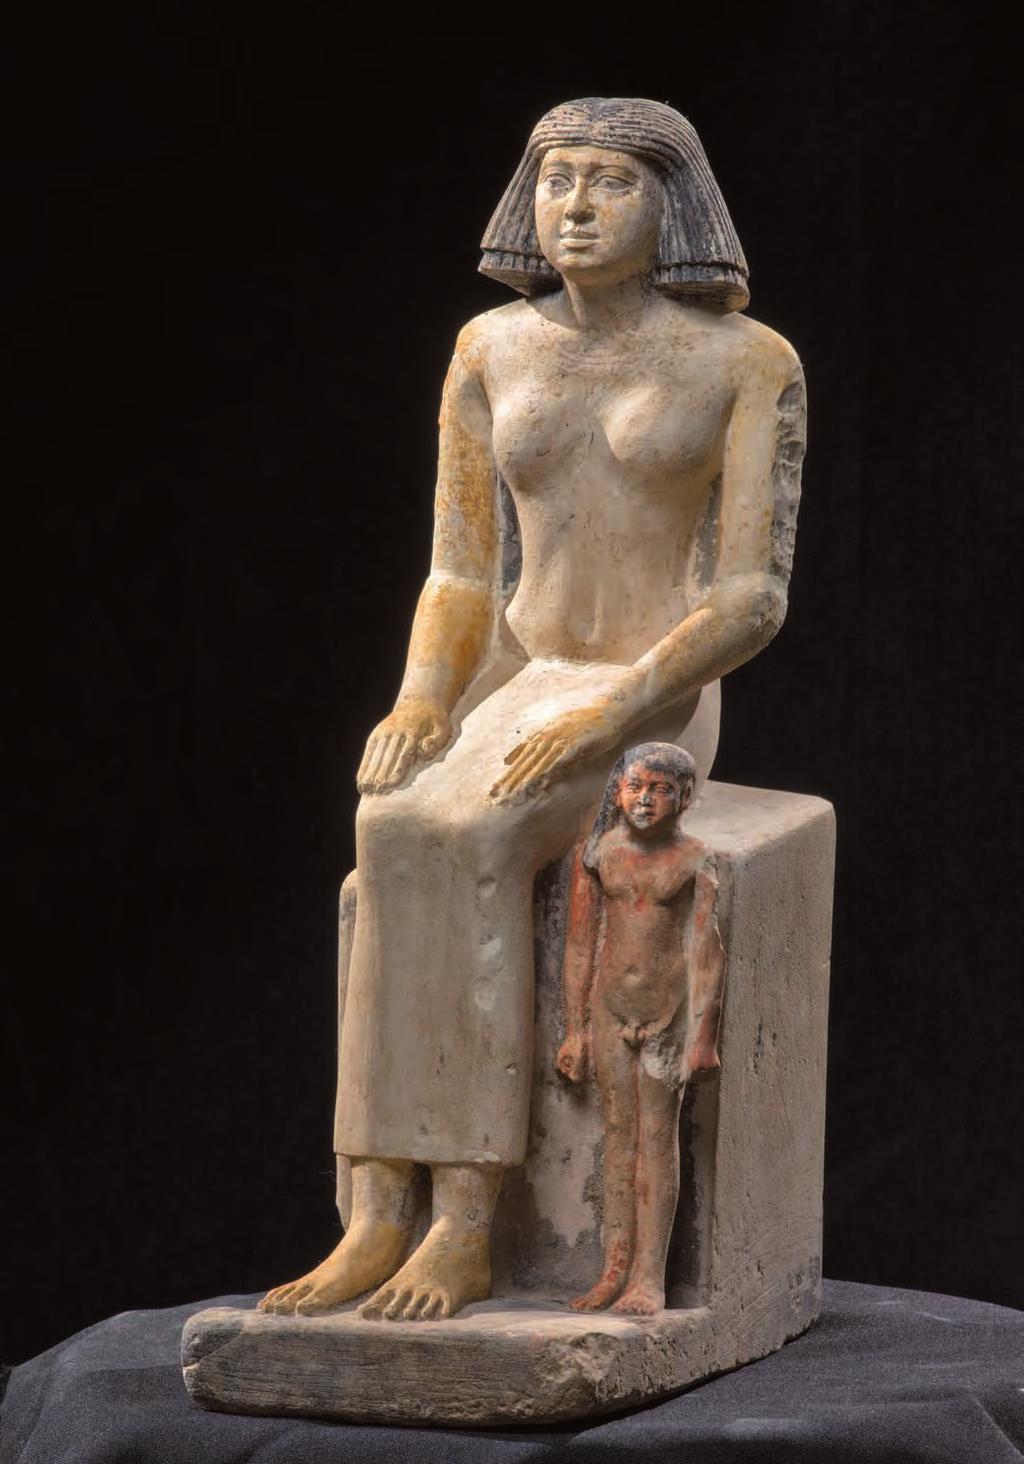 Socha zobrazující ženu s malým chlapcem ze serdábu hrobky AS